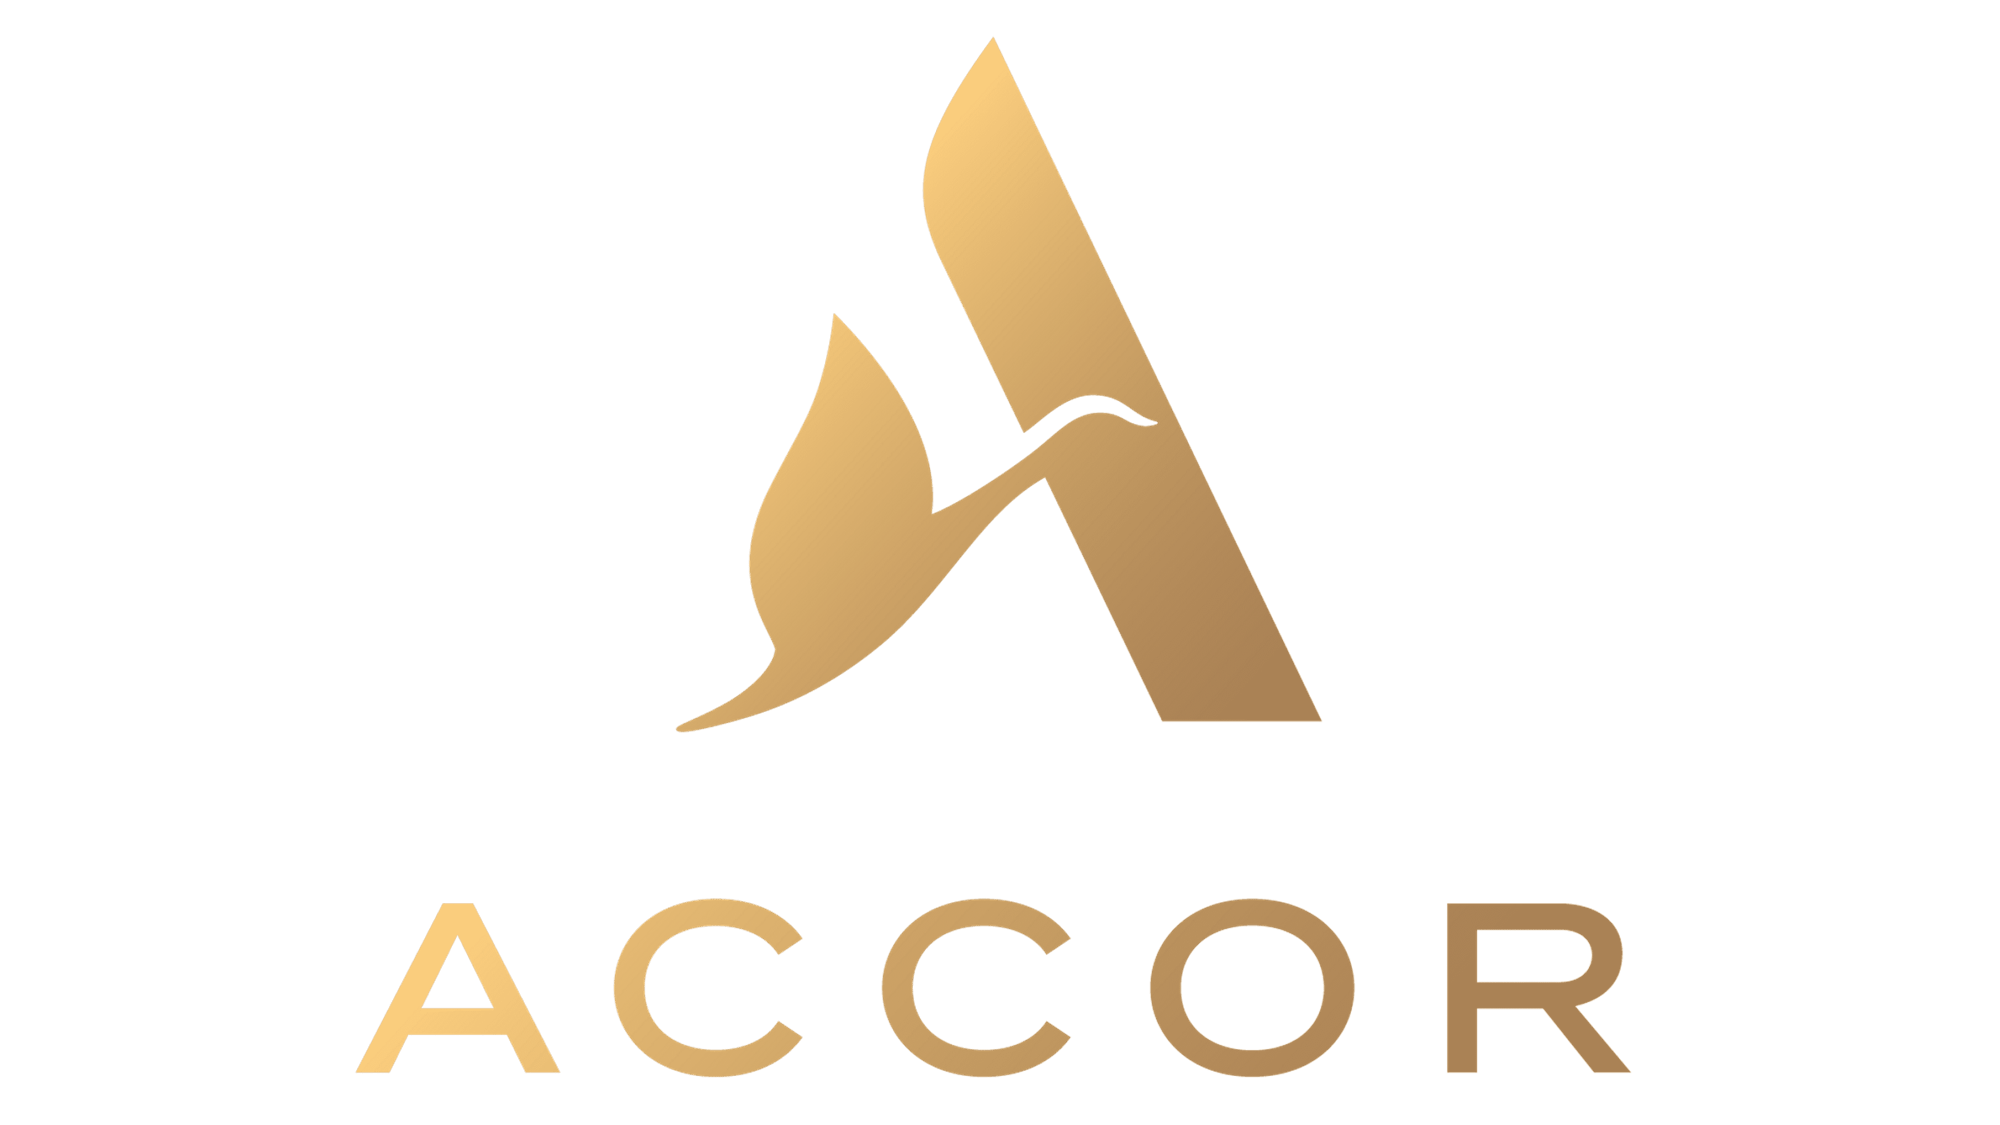 Accor-logo